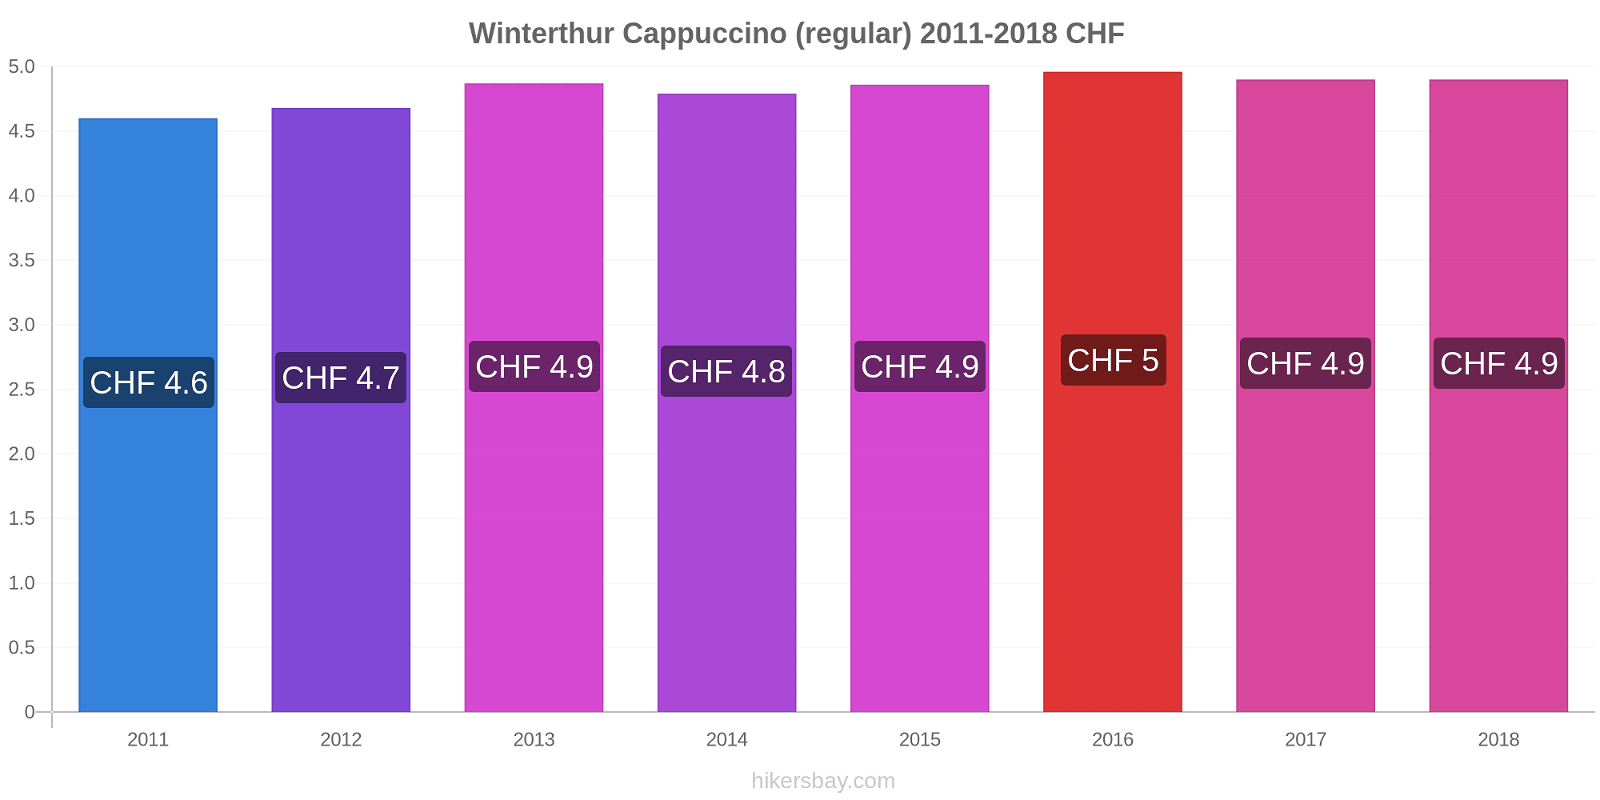 Winterthur price changes Cappuccino (regular) hikersbay.com